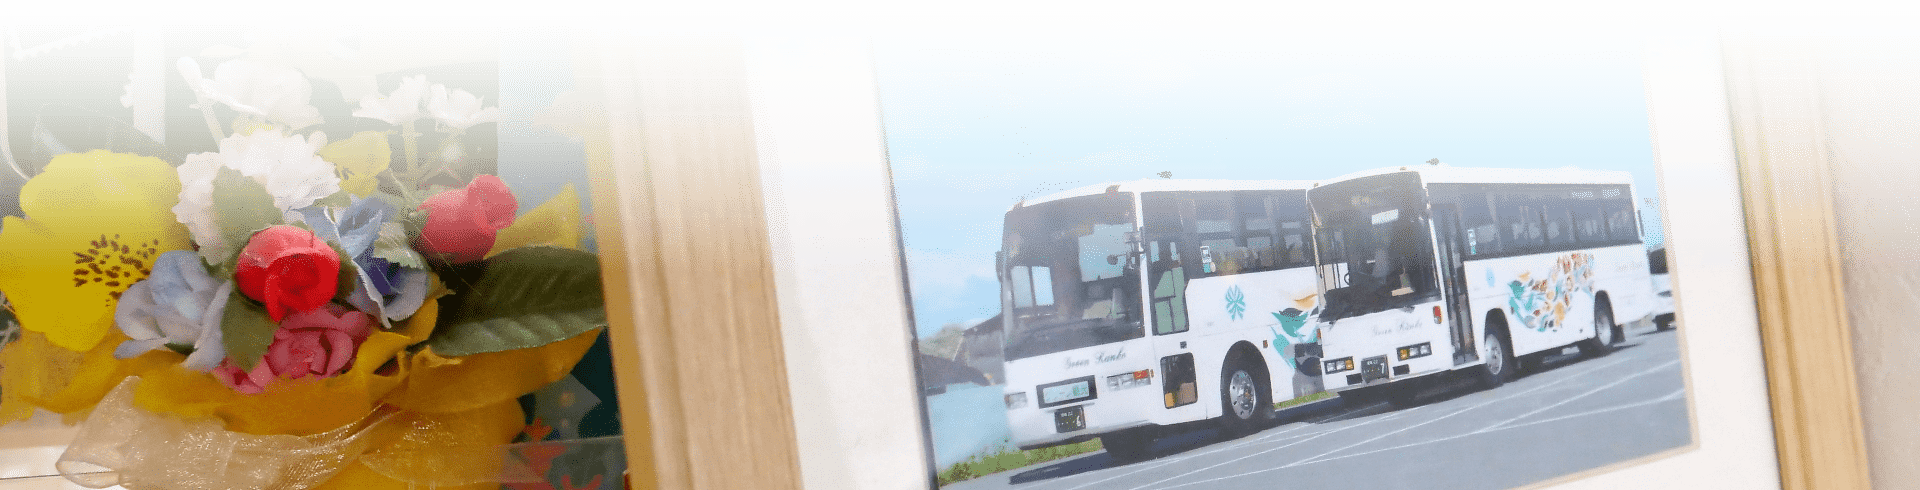 グリーン観光バス